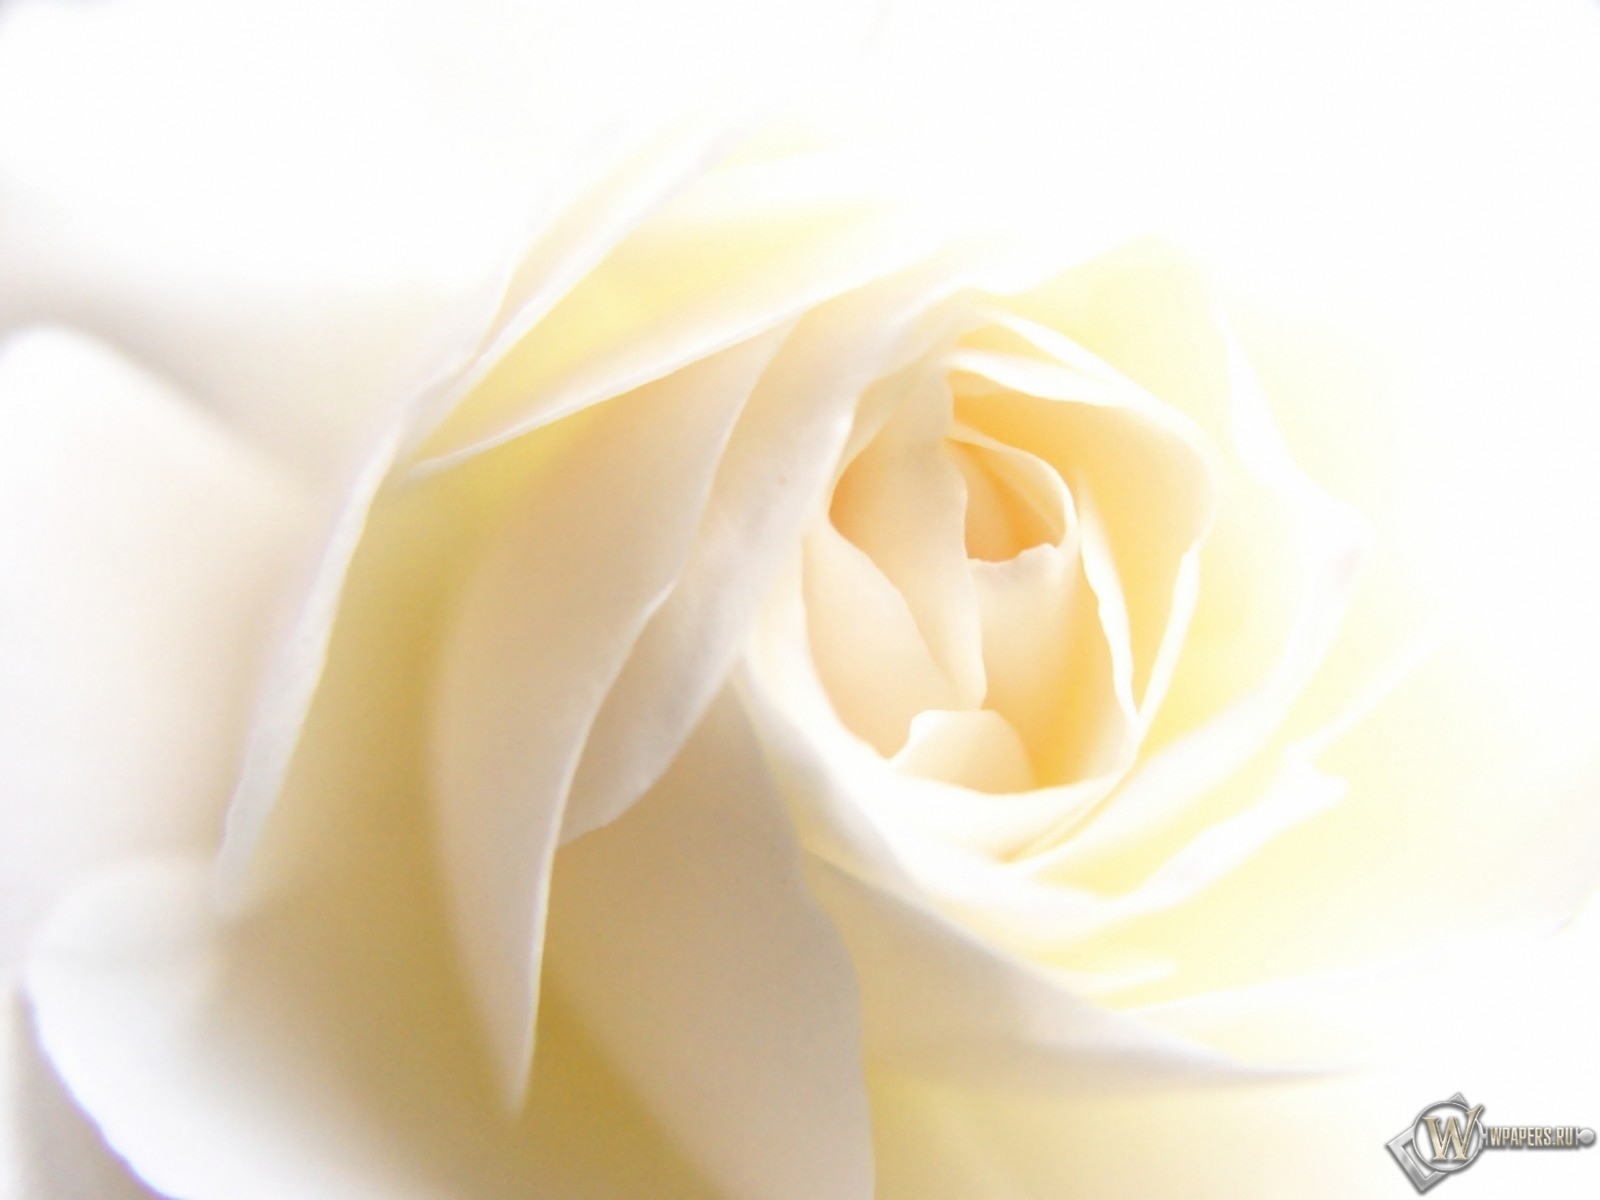 White Rose 1600x1200